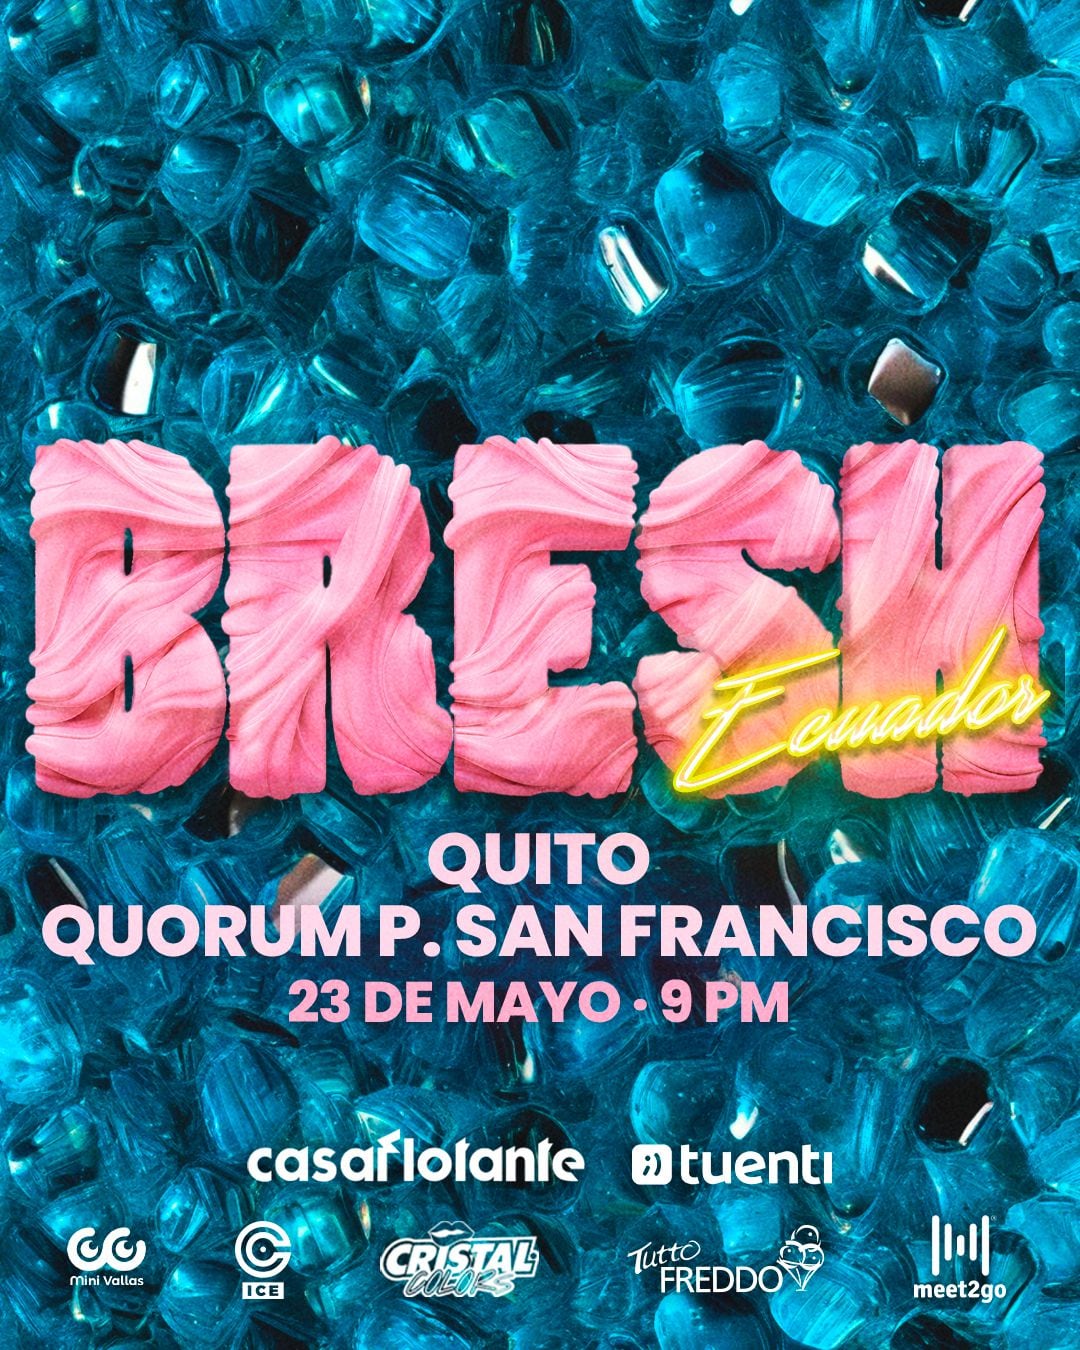 ¡La Fiesta Bresh llega a Cumbayá este 23 de mayo! Una noche de espectáculo y sorpresas